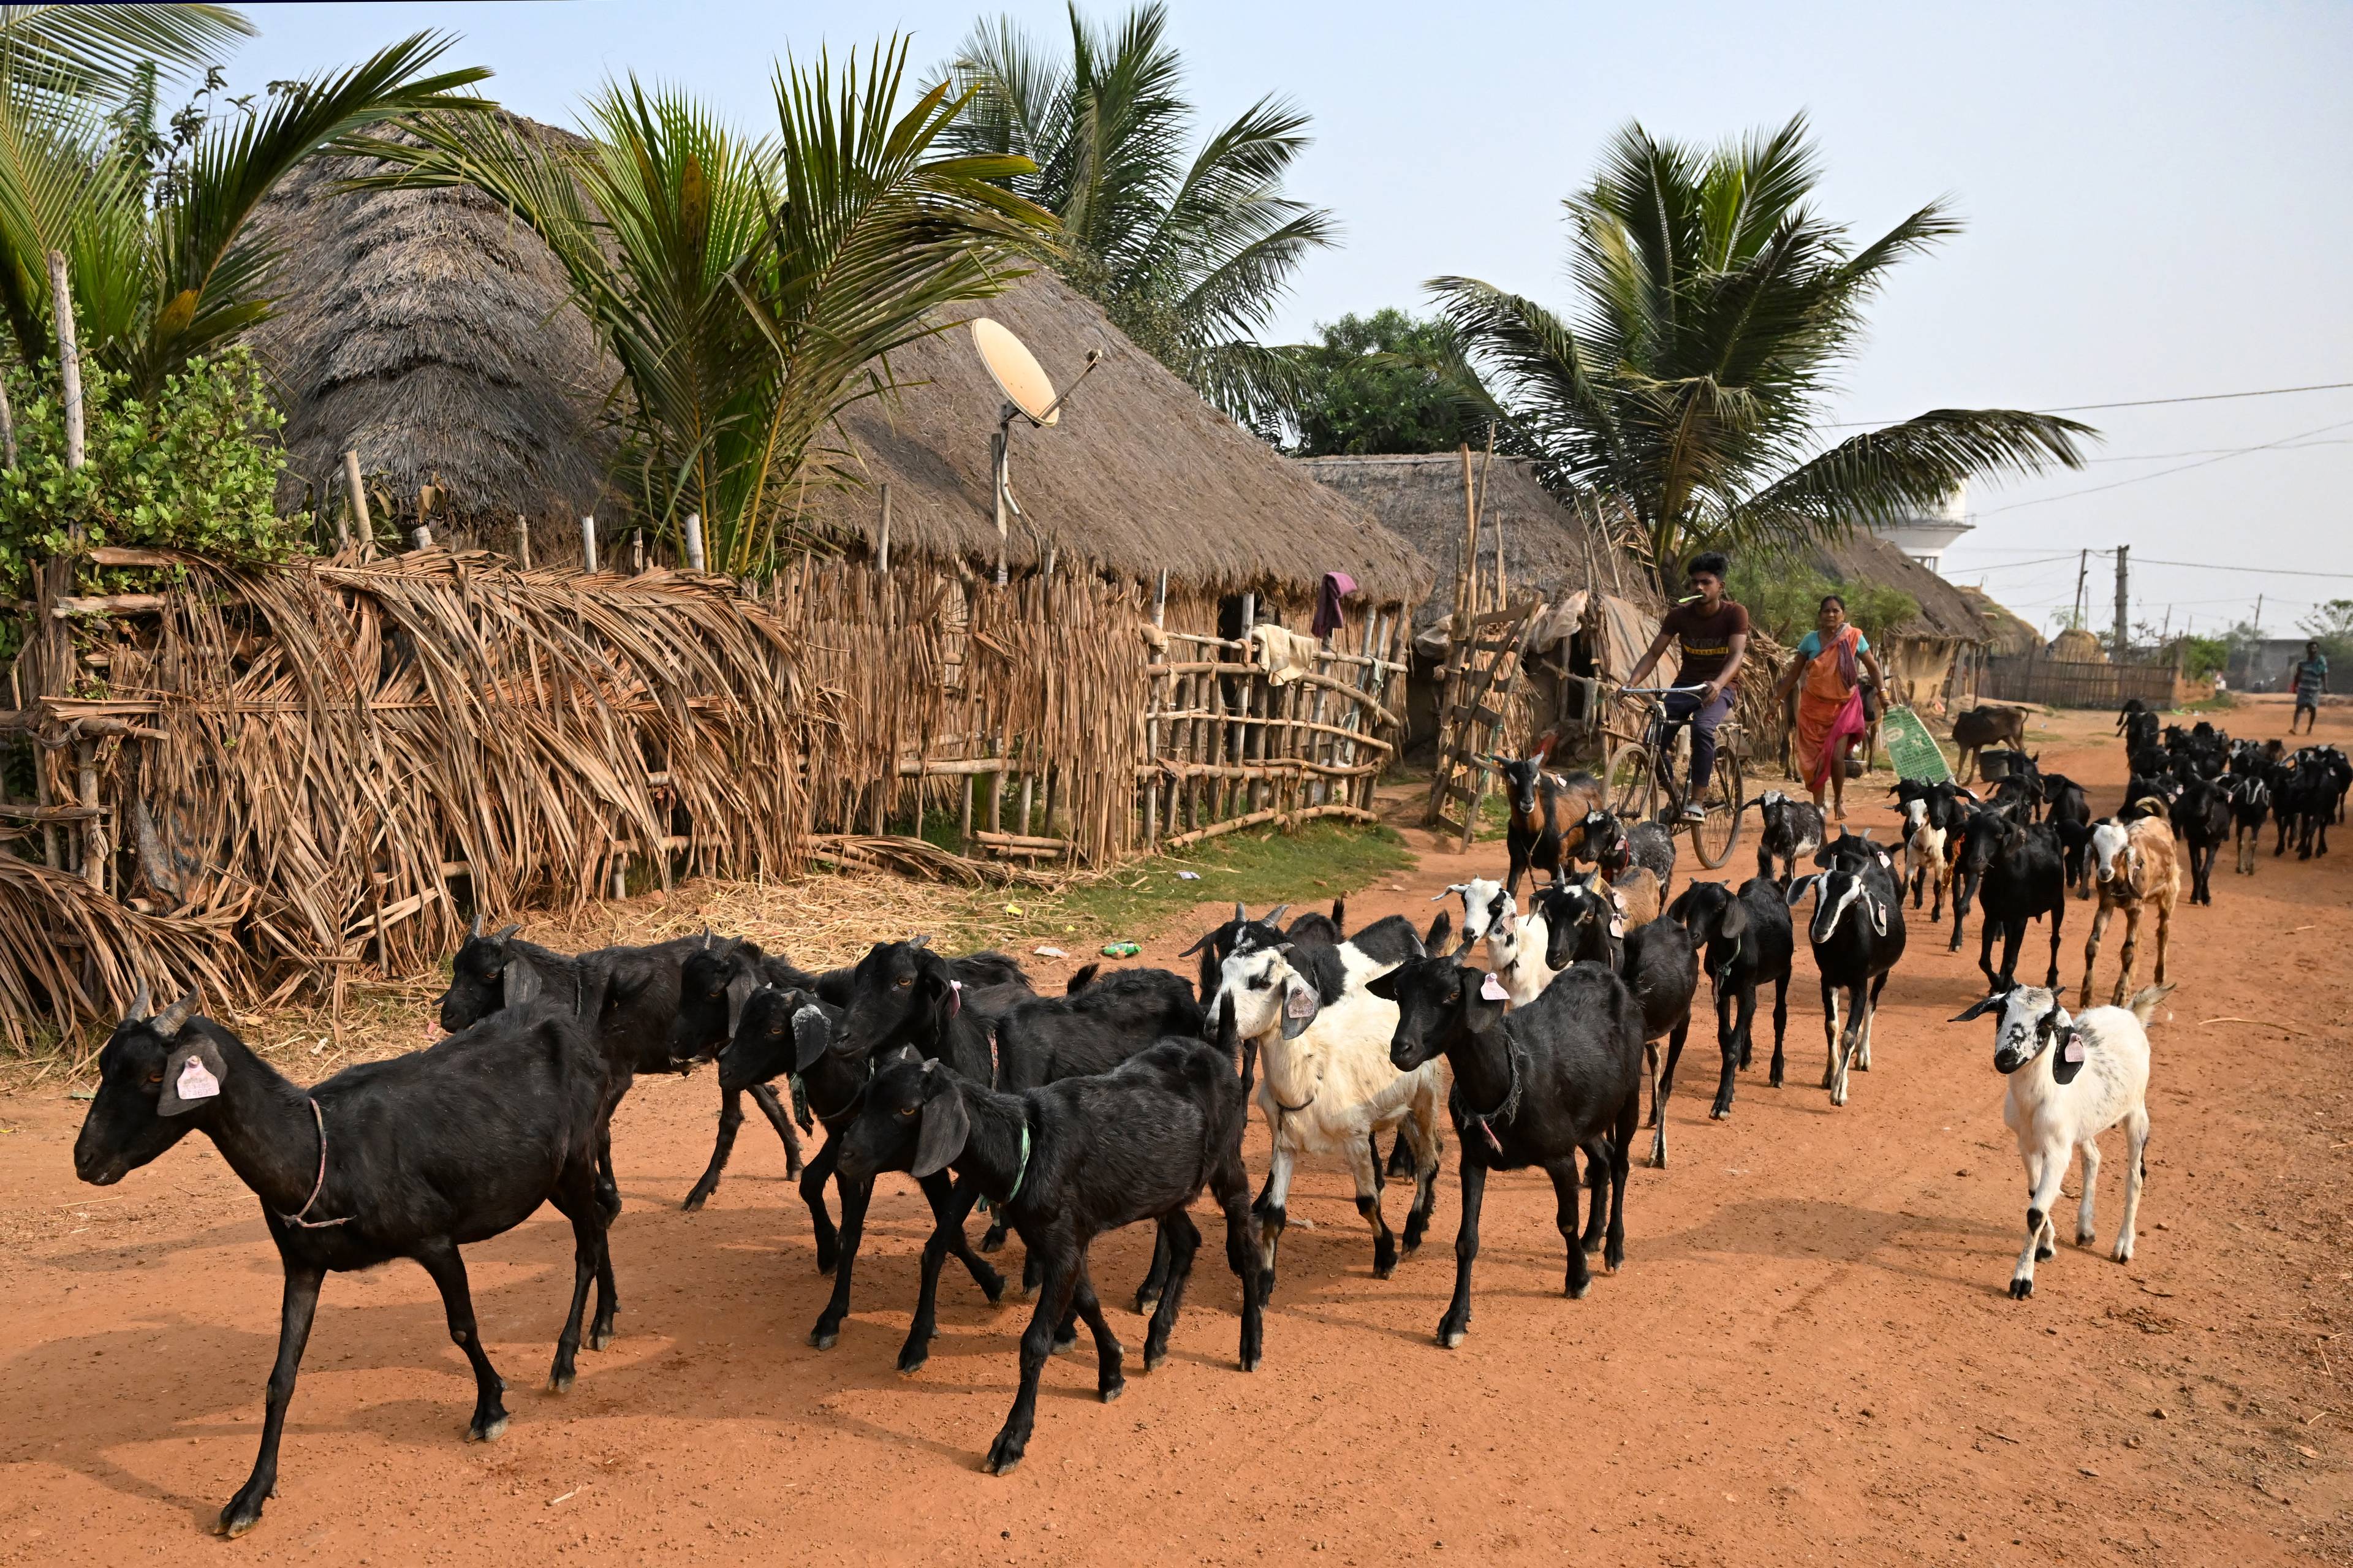 wieśniacy prowadzący stado bydła przez wioskę, w tle palmy